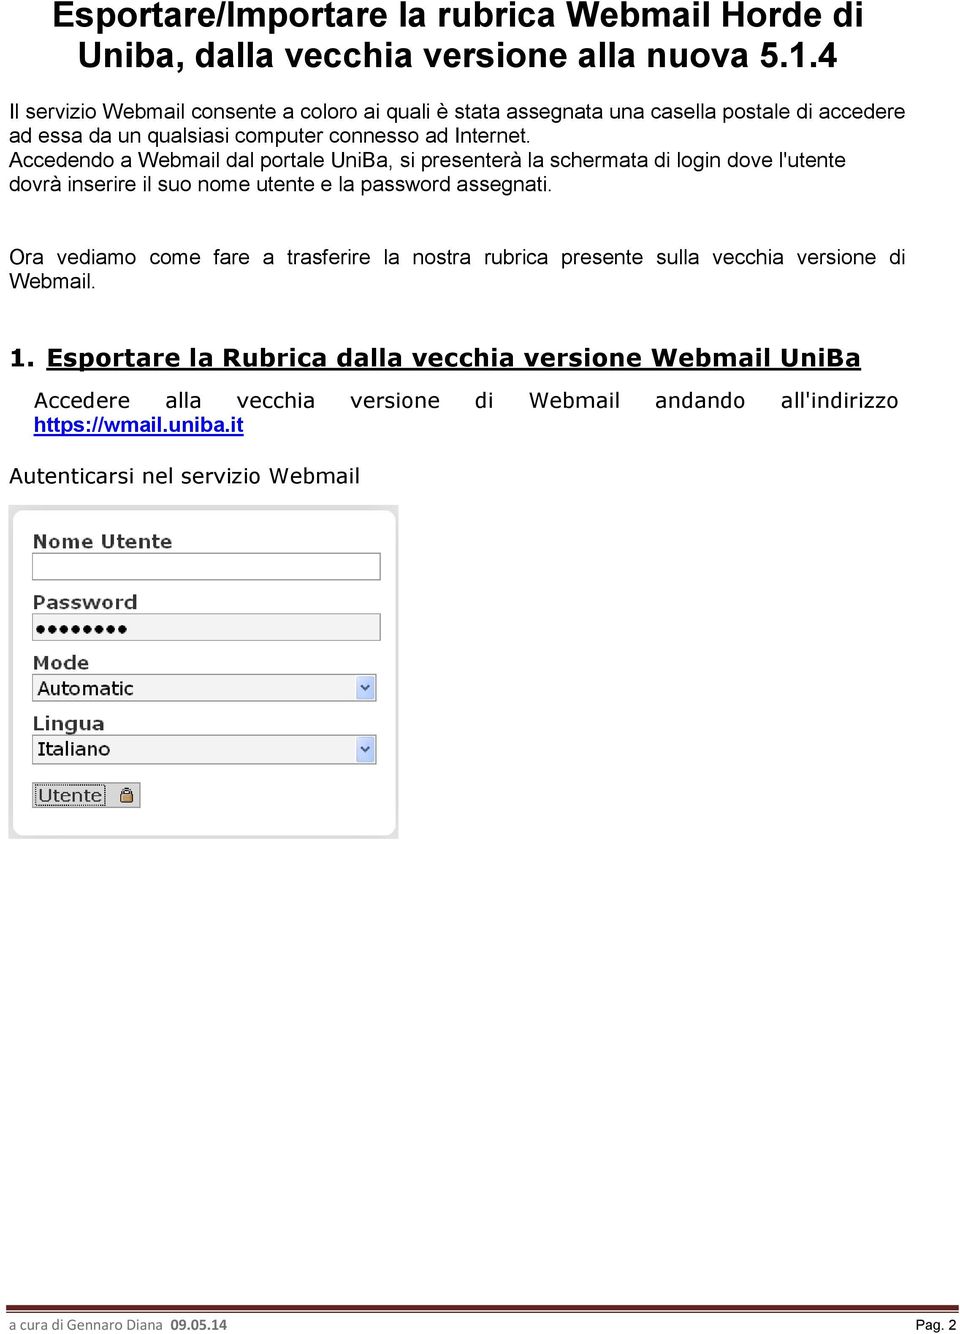 Accedendo a Webmail dal portale UniBa, si presenterà la schermata di login dove l'utente dovrà inserire il suo nome utente e la password assegnati.